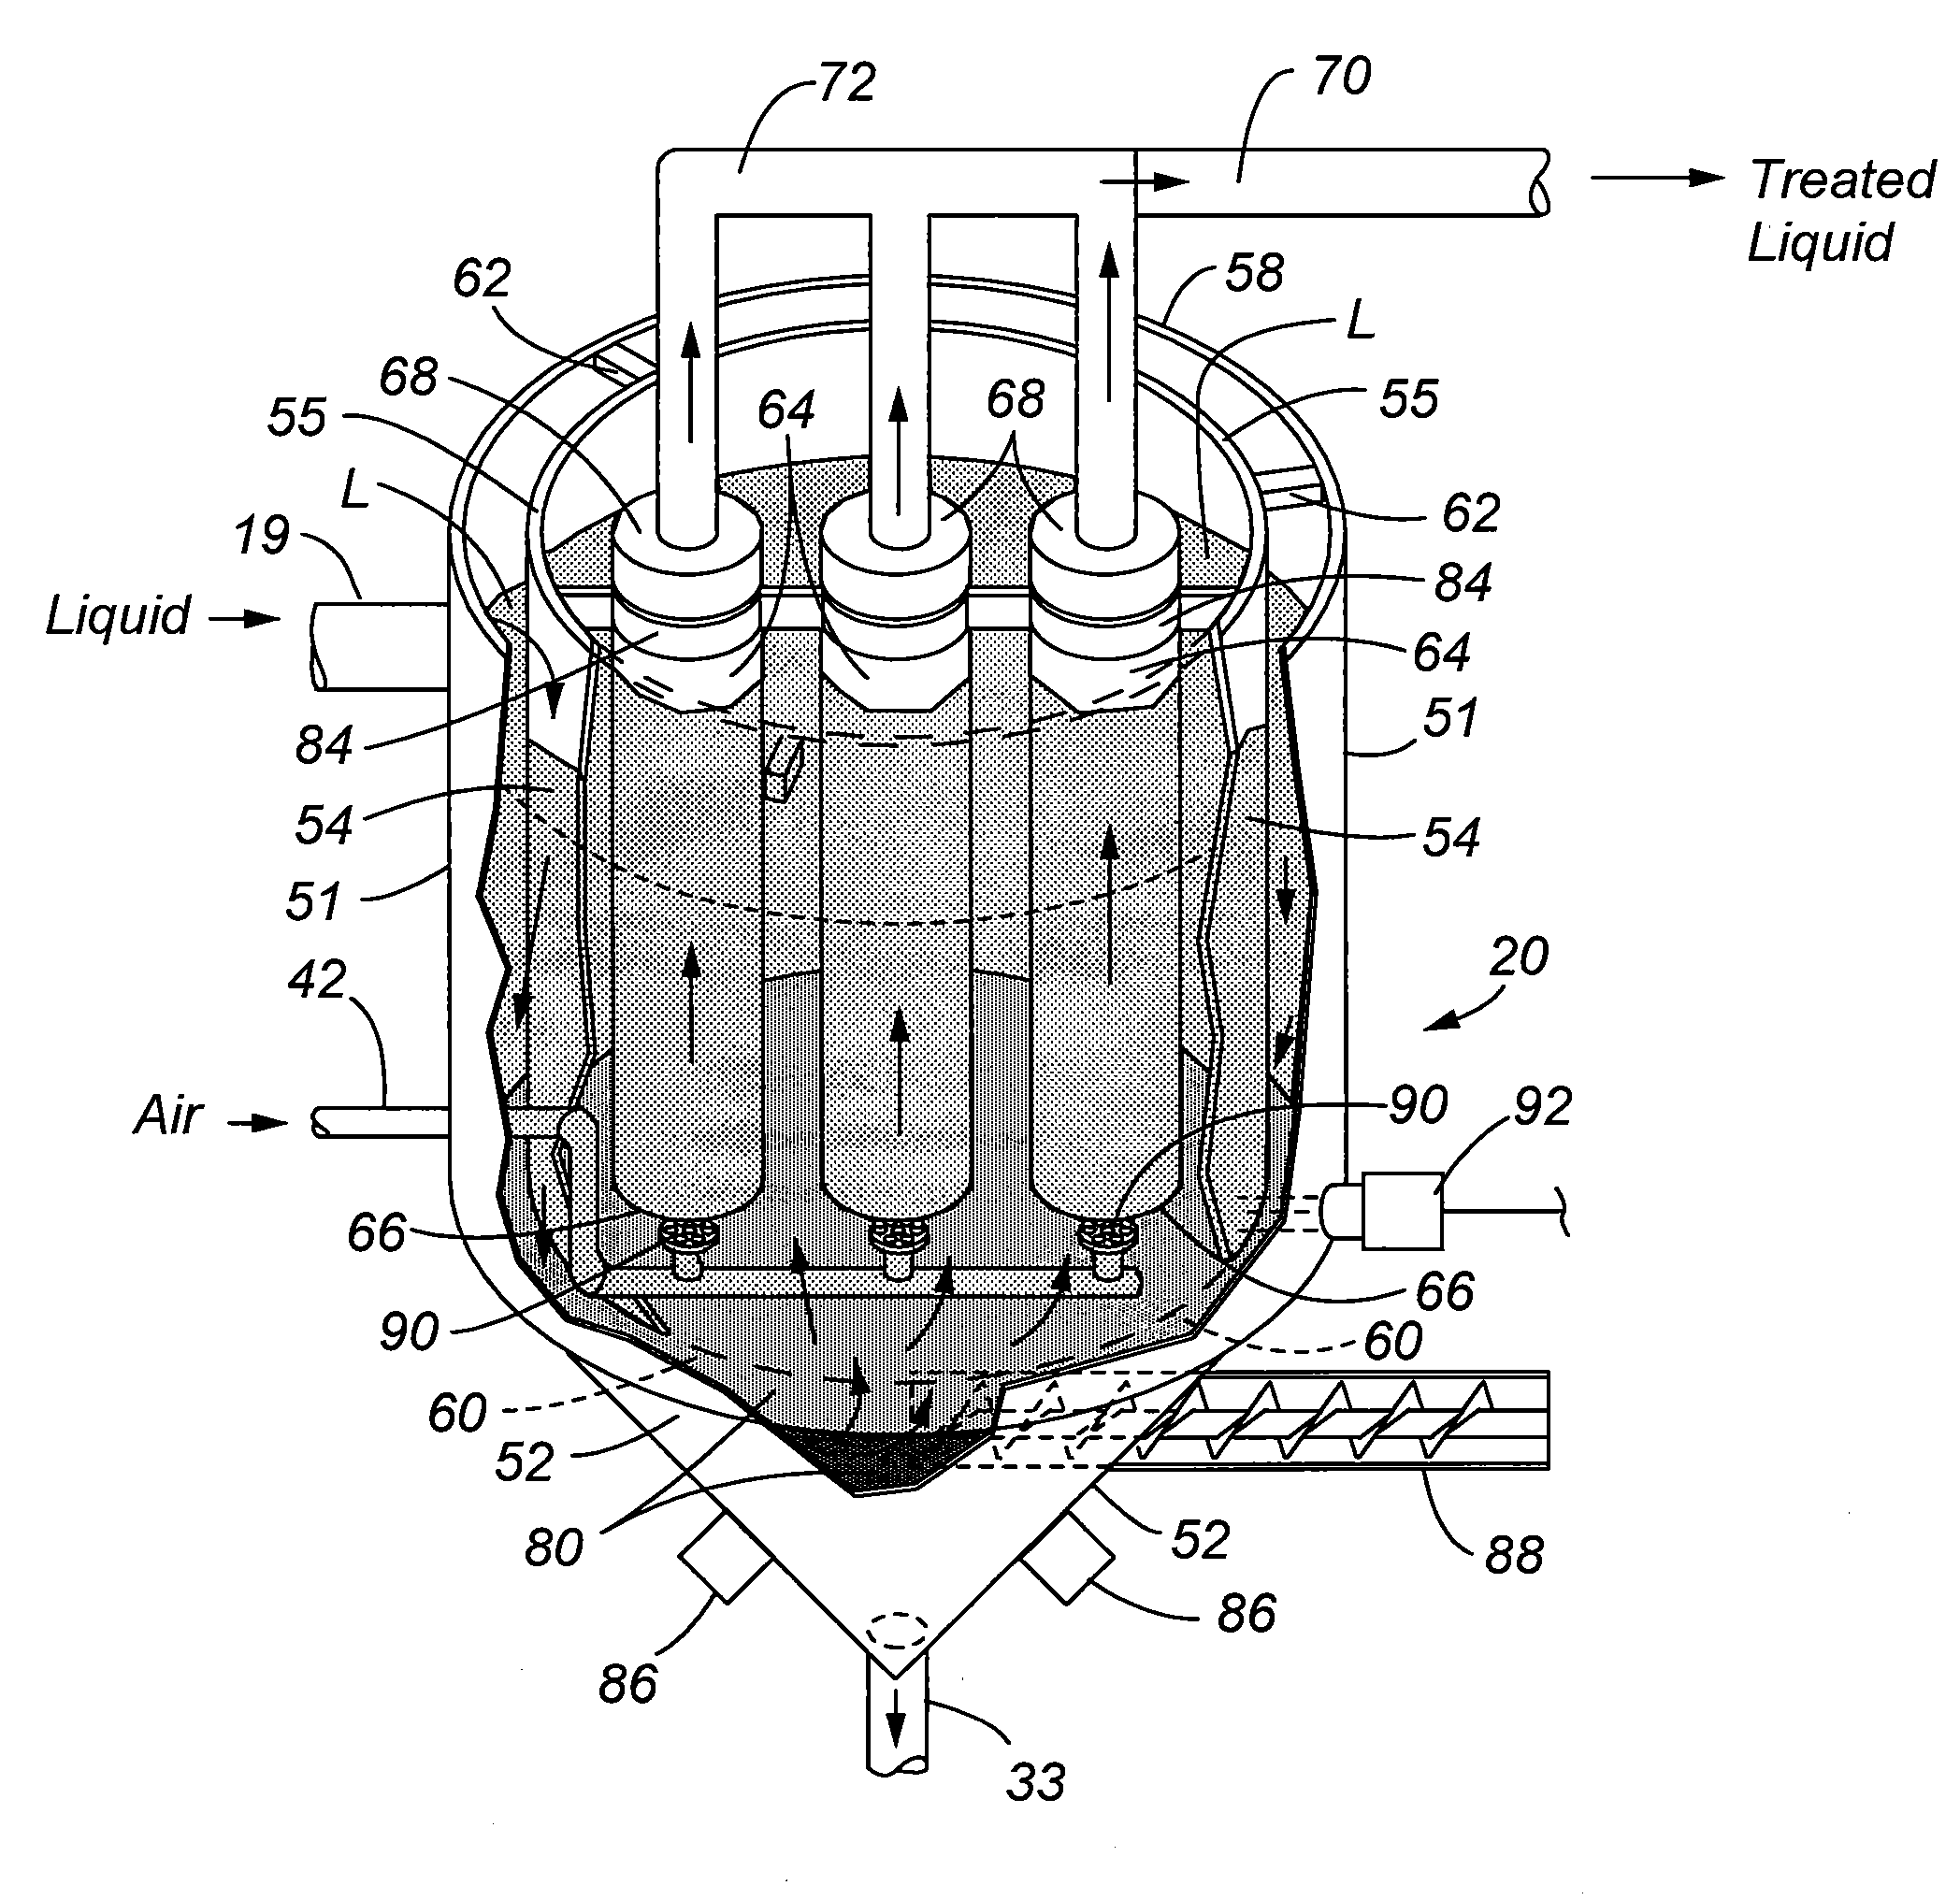 Method and apparatus for treatament of contaminated liquid